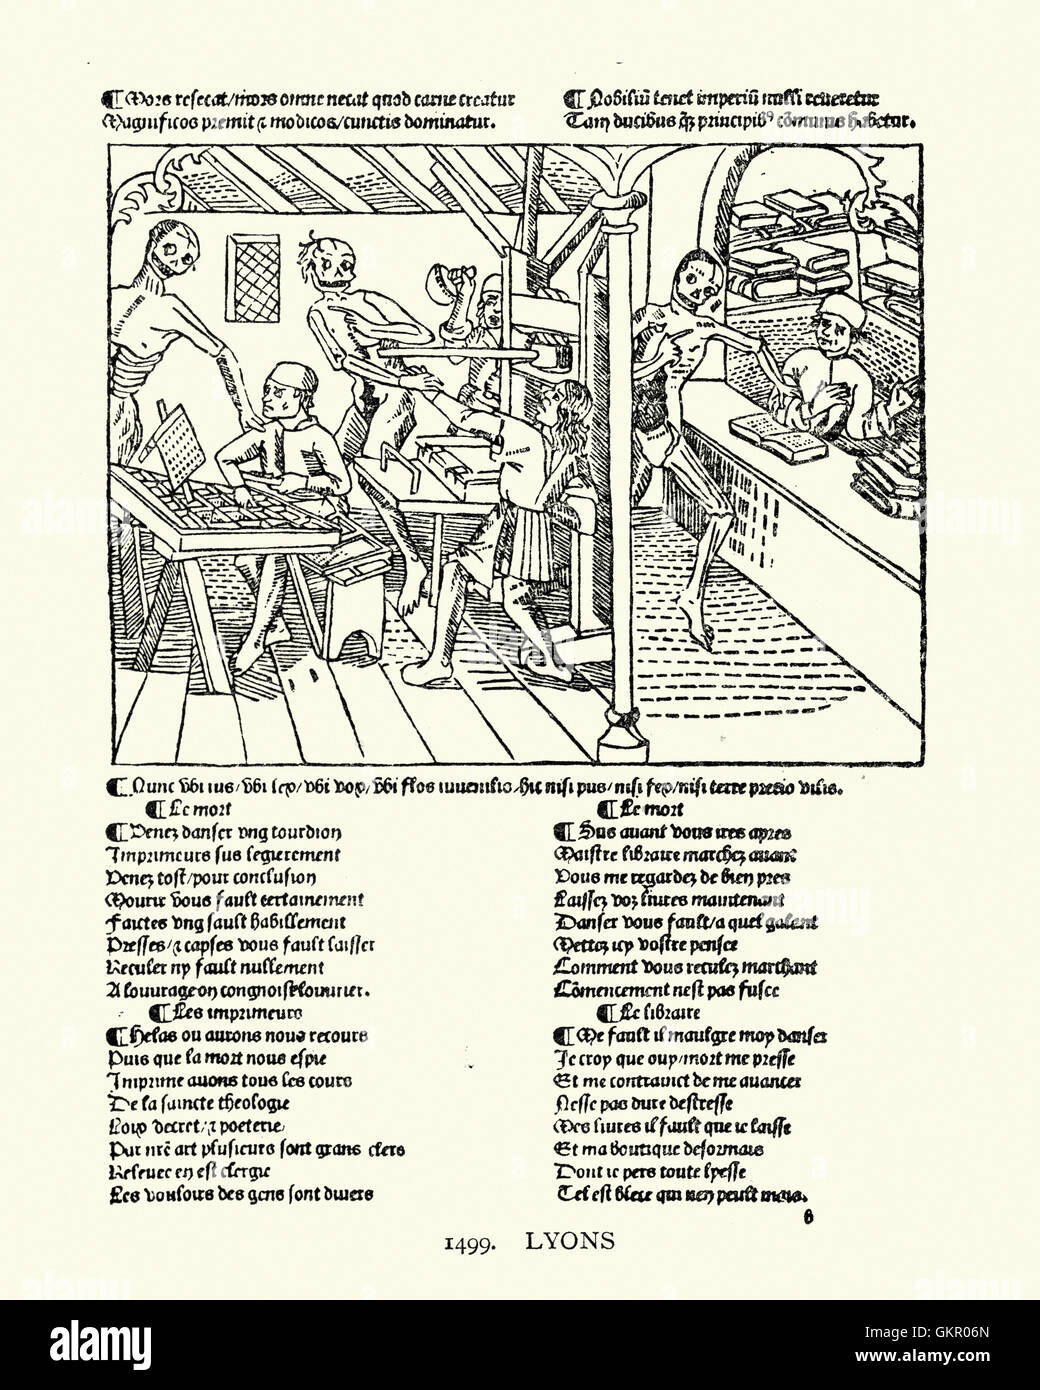 Holzschnitt von einer Druckerei aus der Tanz des Todes, 1499 Stockfoto